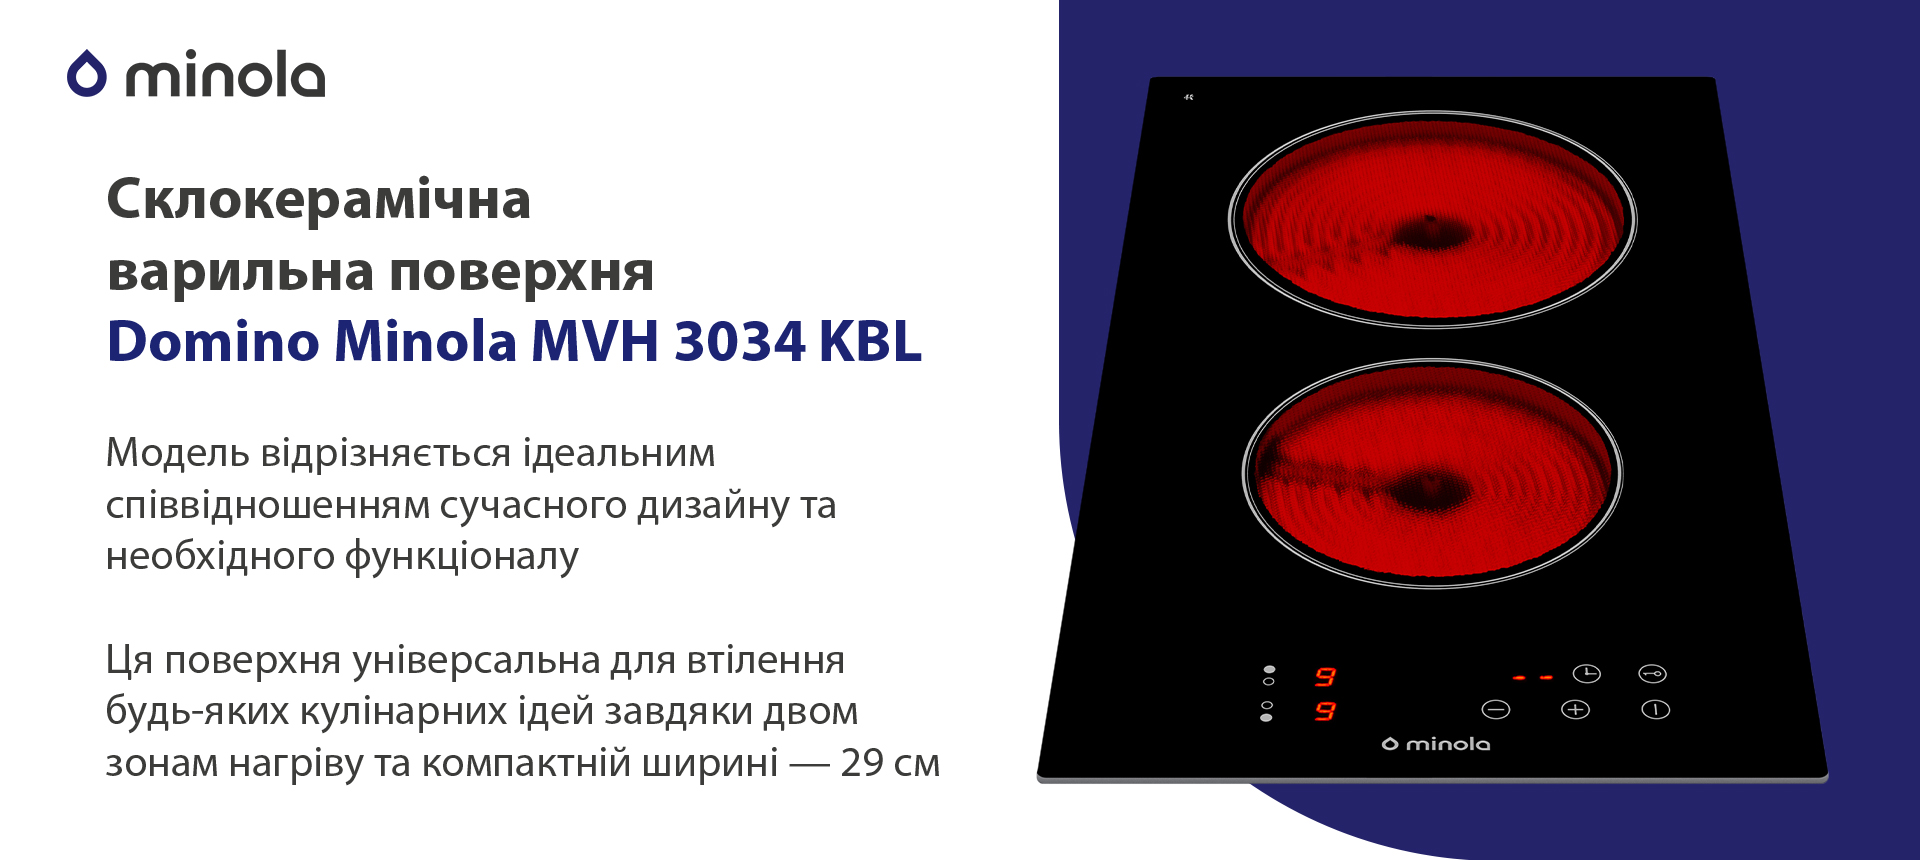 Електрична варильна поверхня Minola Domino MVH 3034 KBL зовнішній вигляд - фото 9